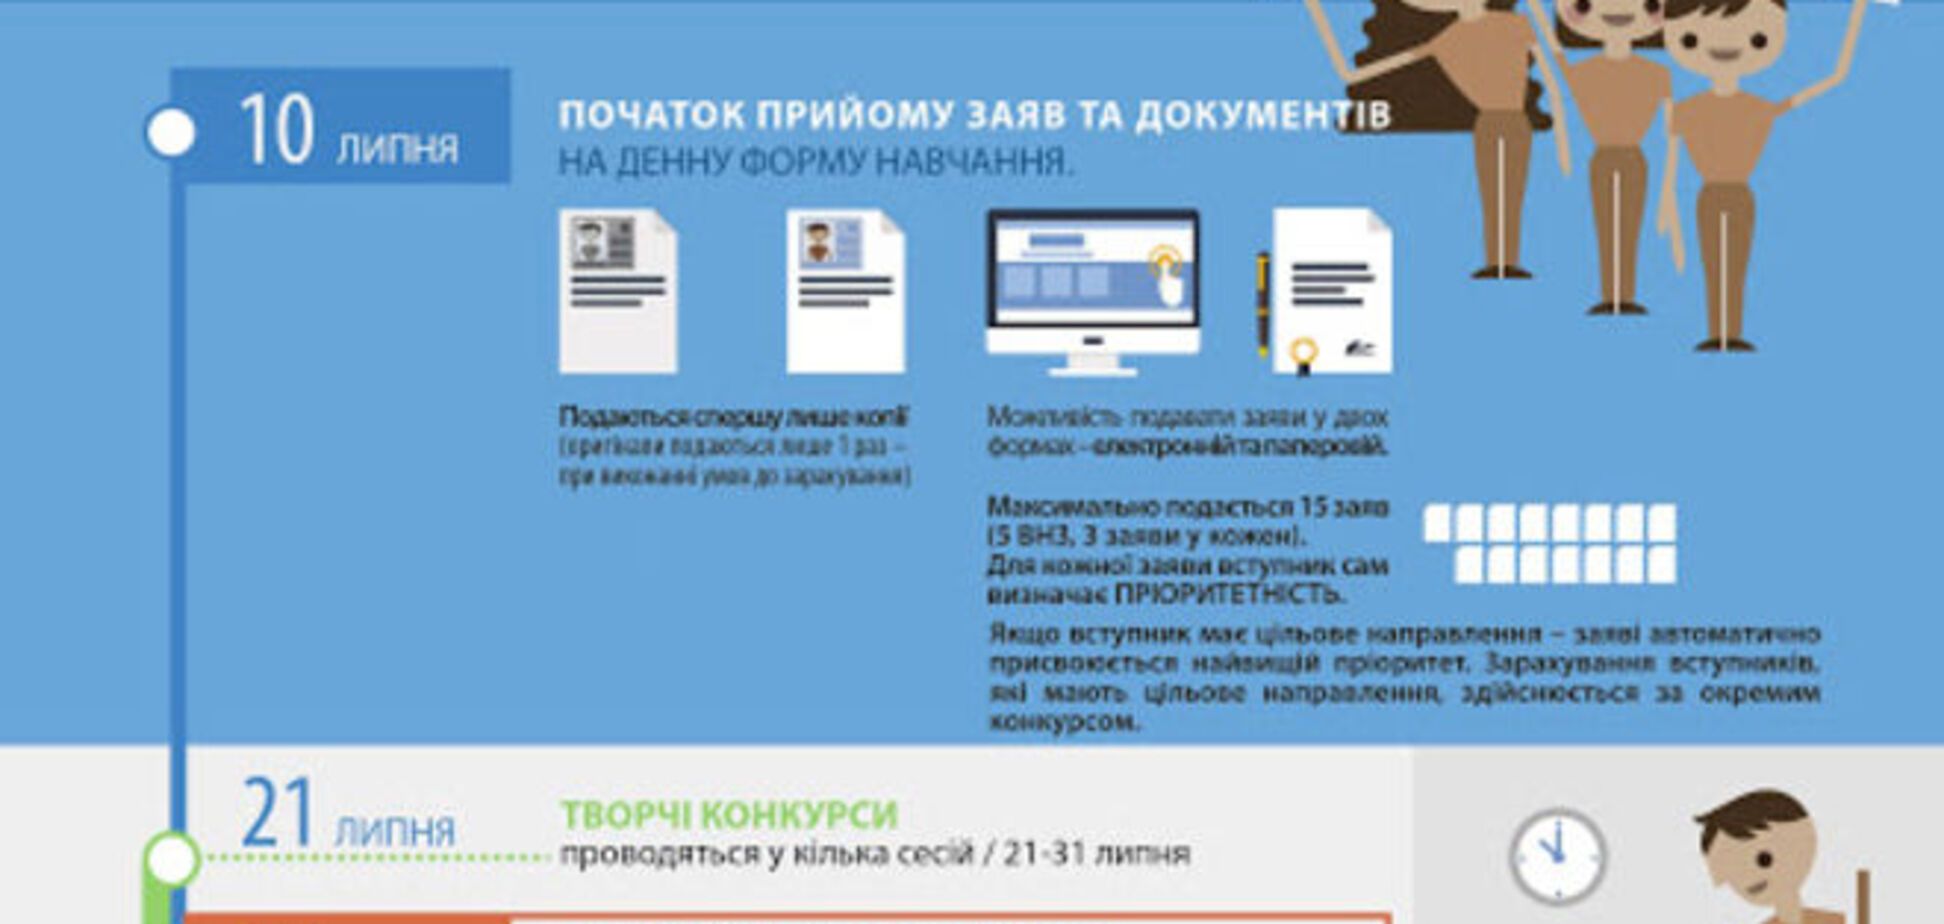 В Украине началась вступительная кампания-2015: опубликована инфографика